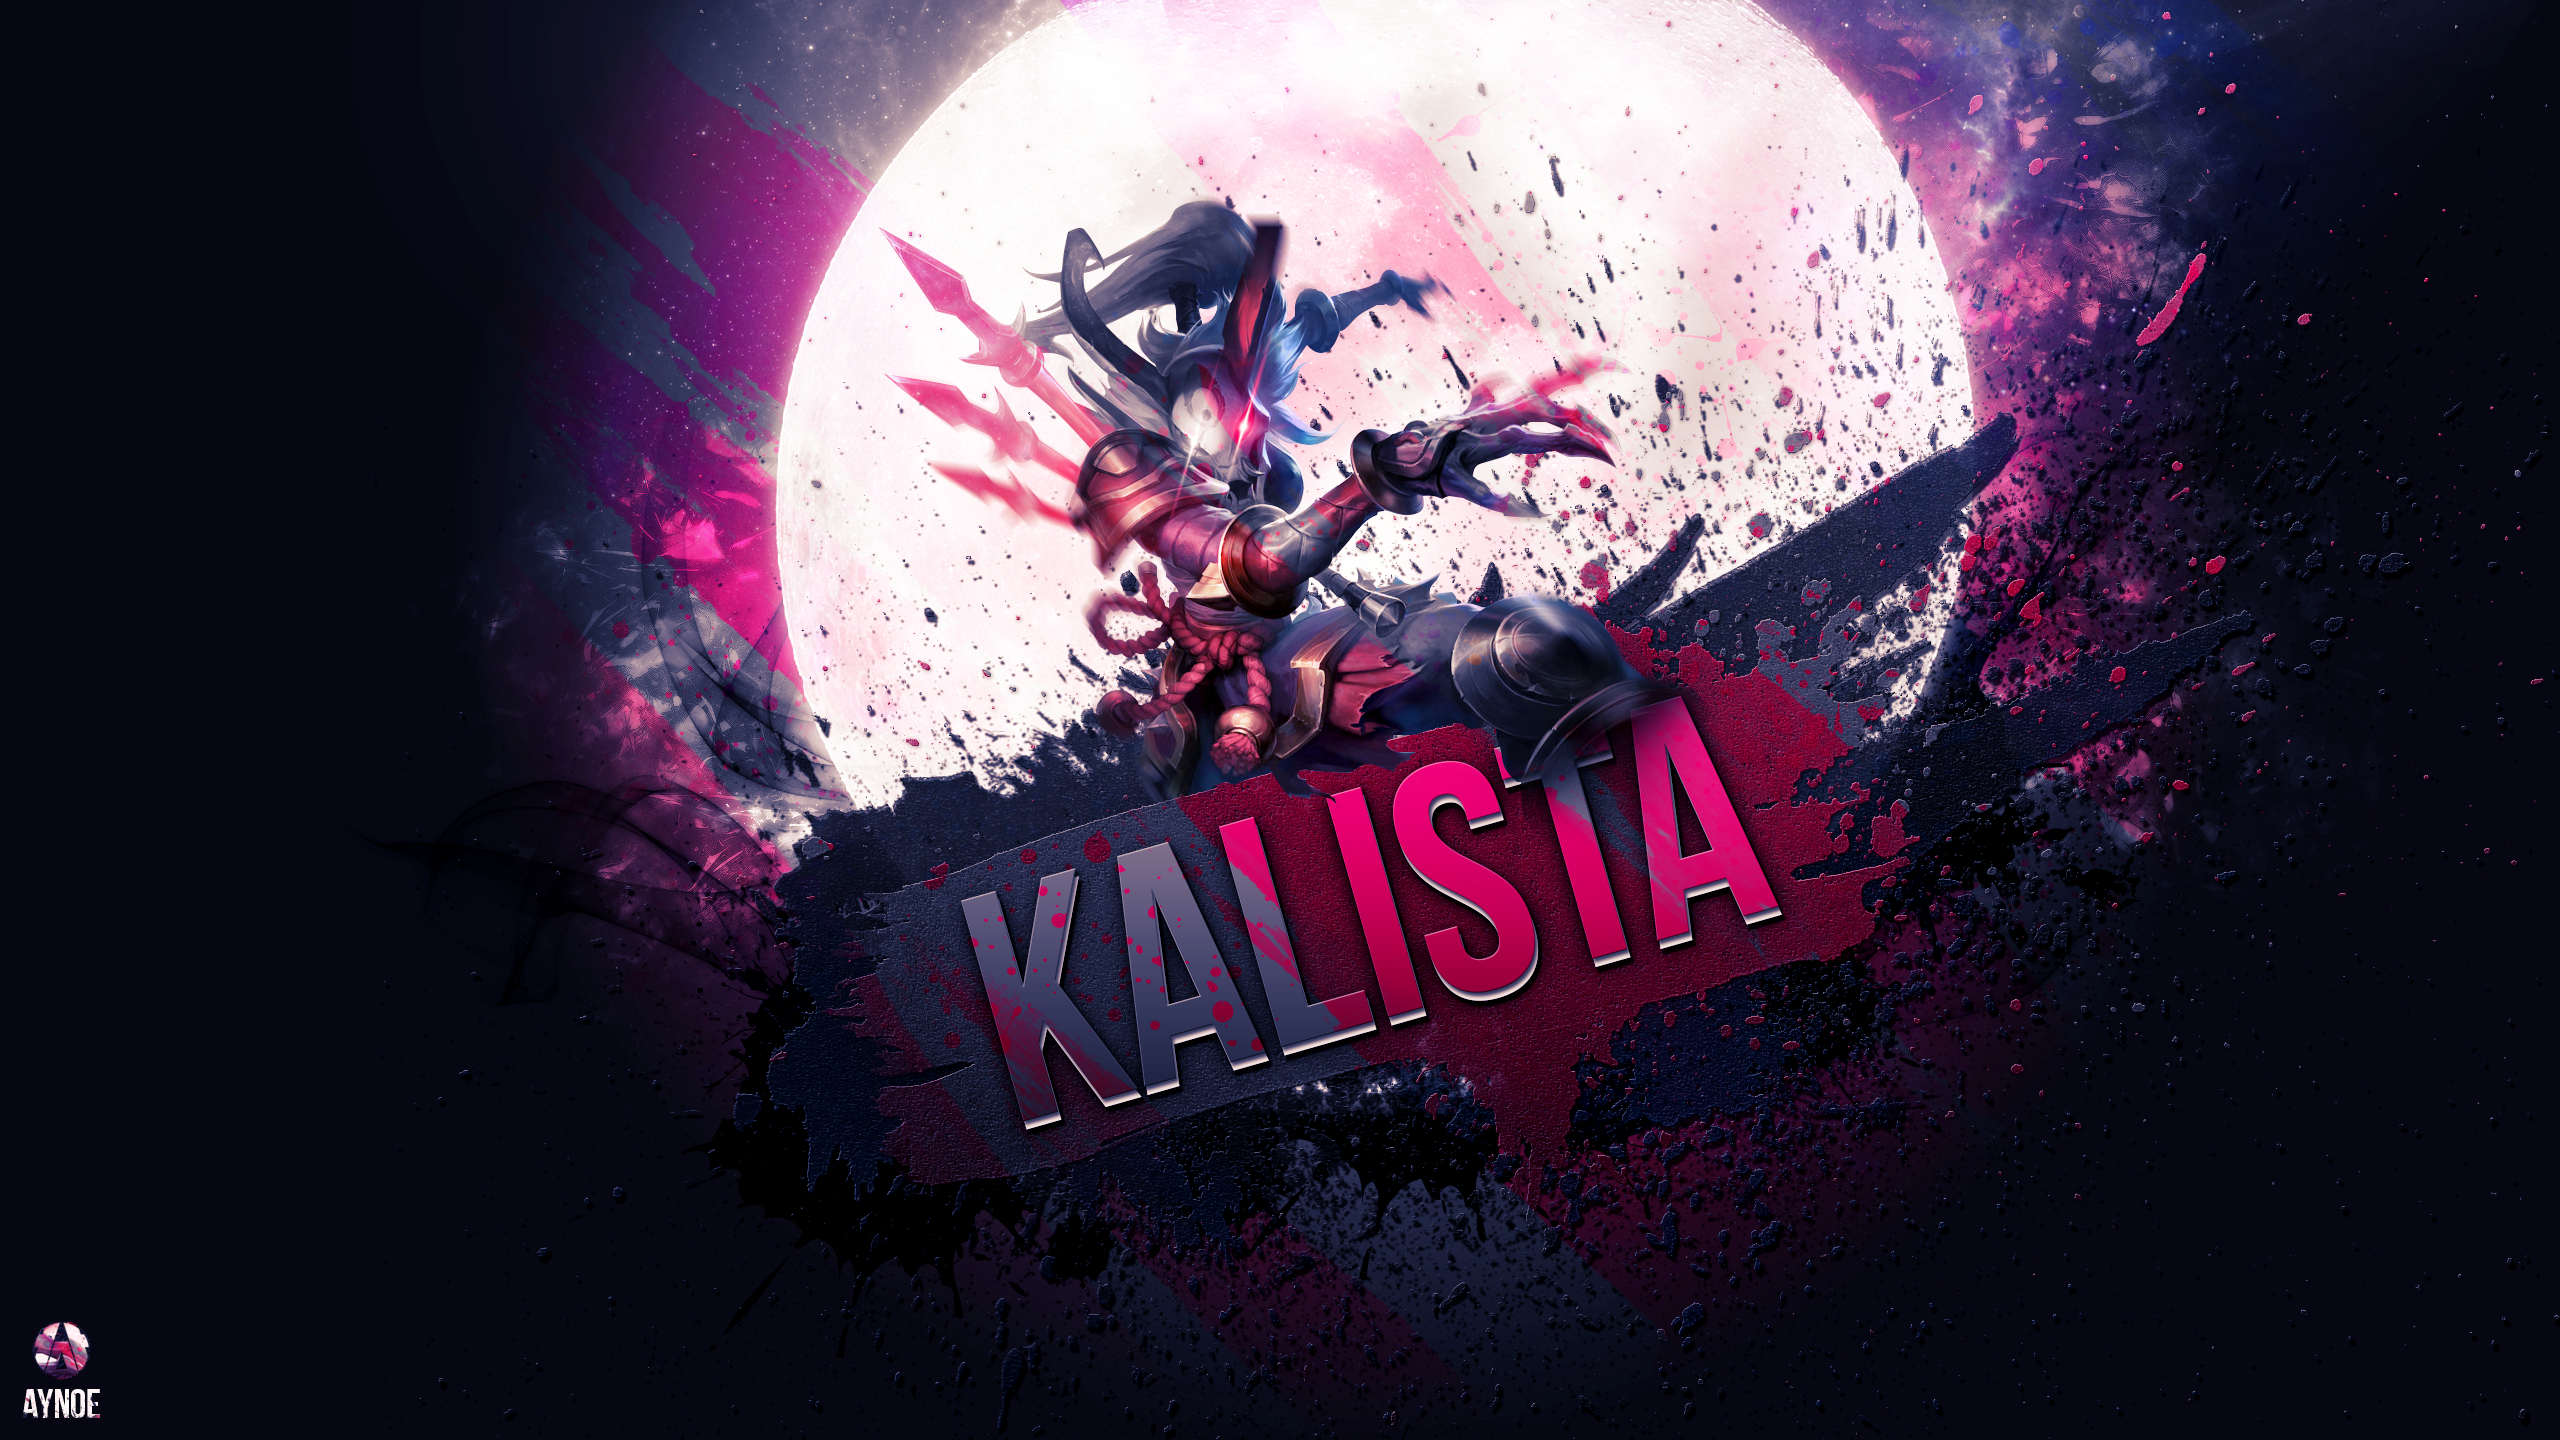 Kalista League Of Legends Wallpaper By Aynoe